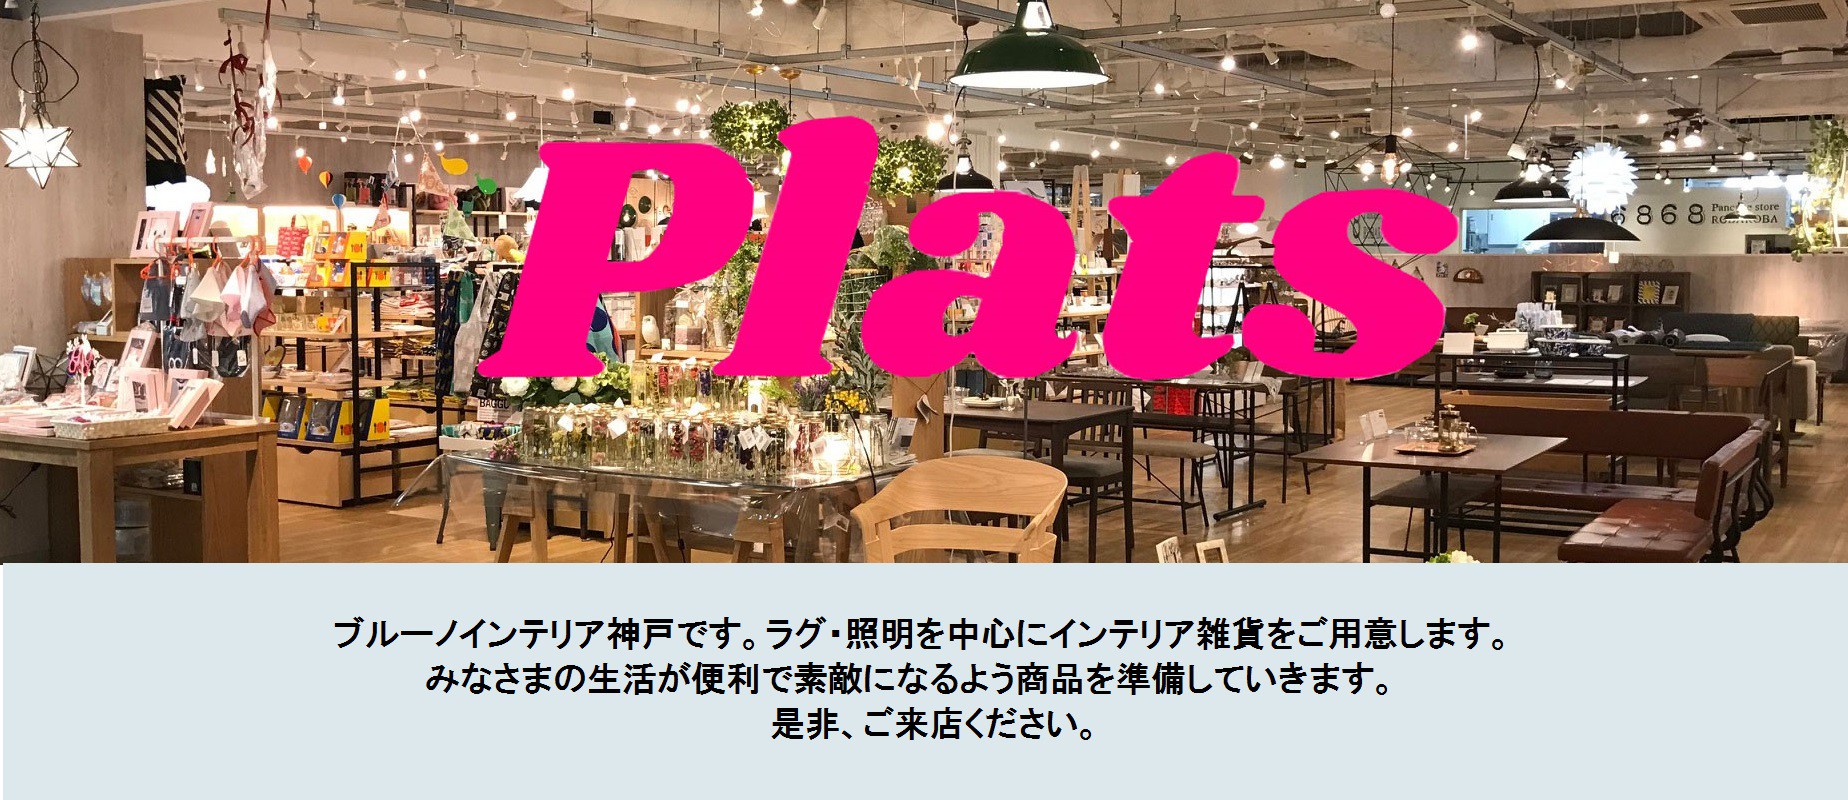 ブルーノインテリア神戸 / ラグ カーペット 照明 座椅子 インテリア雑貨